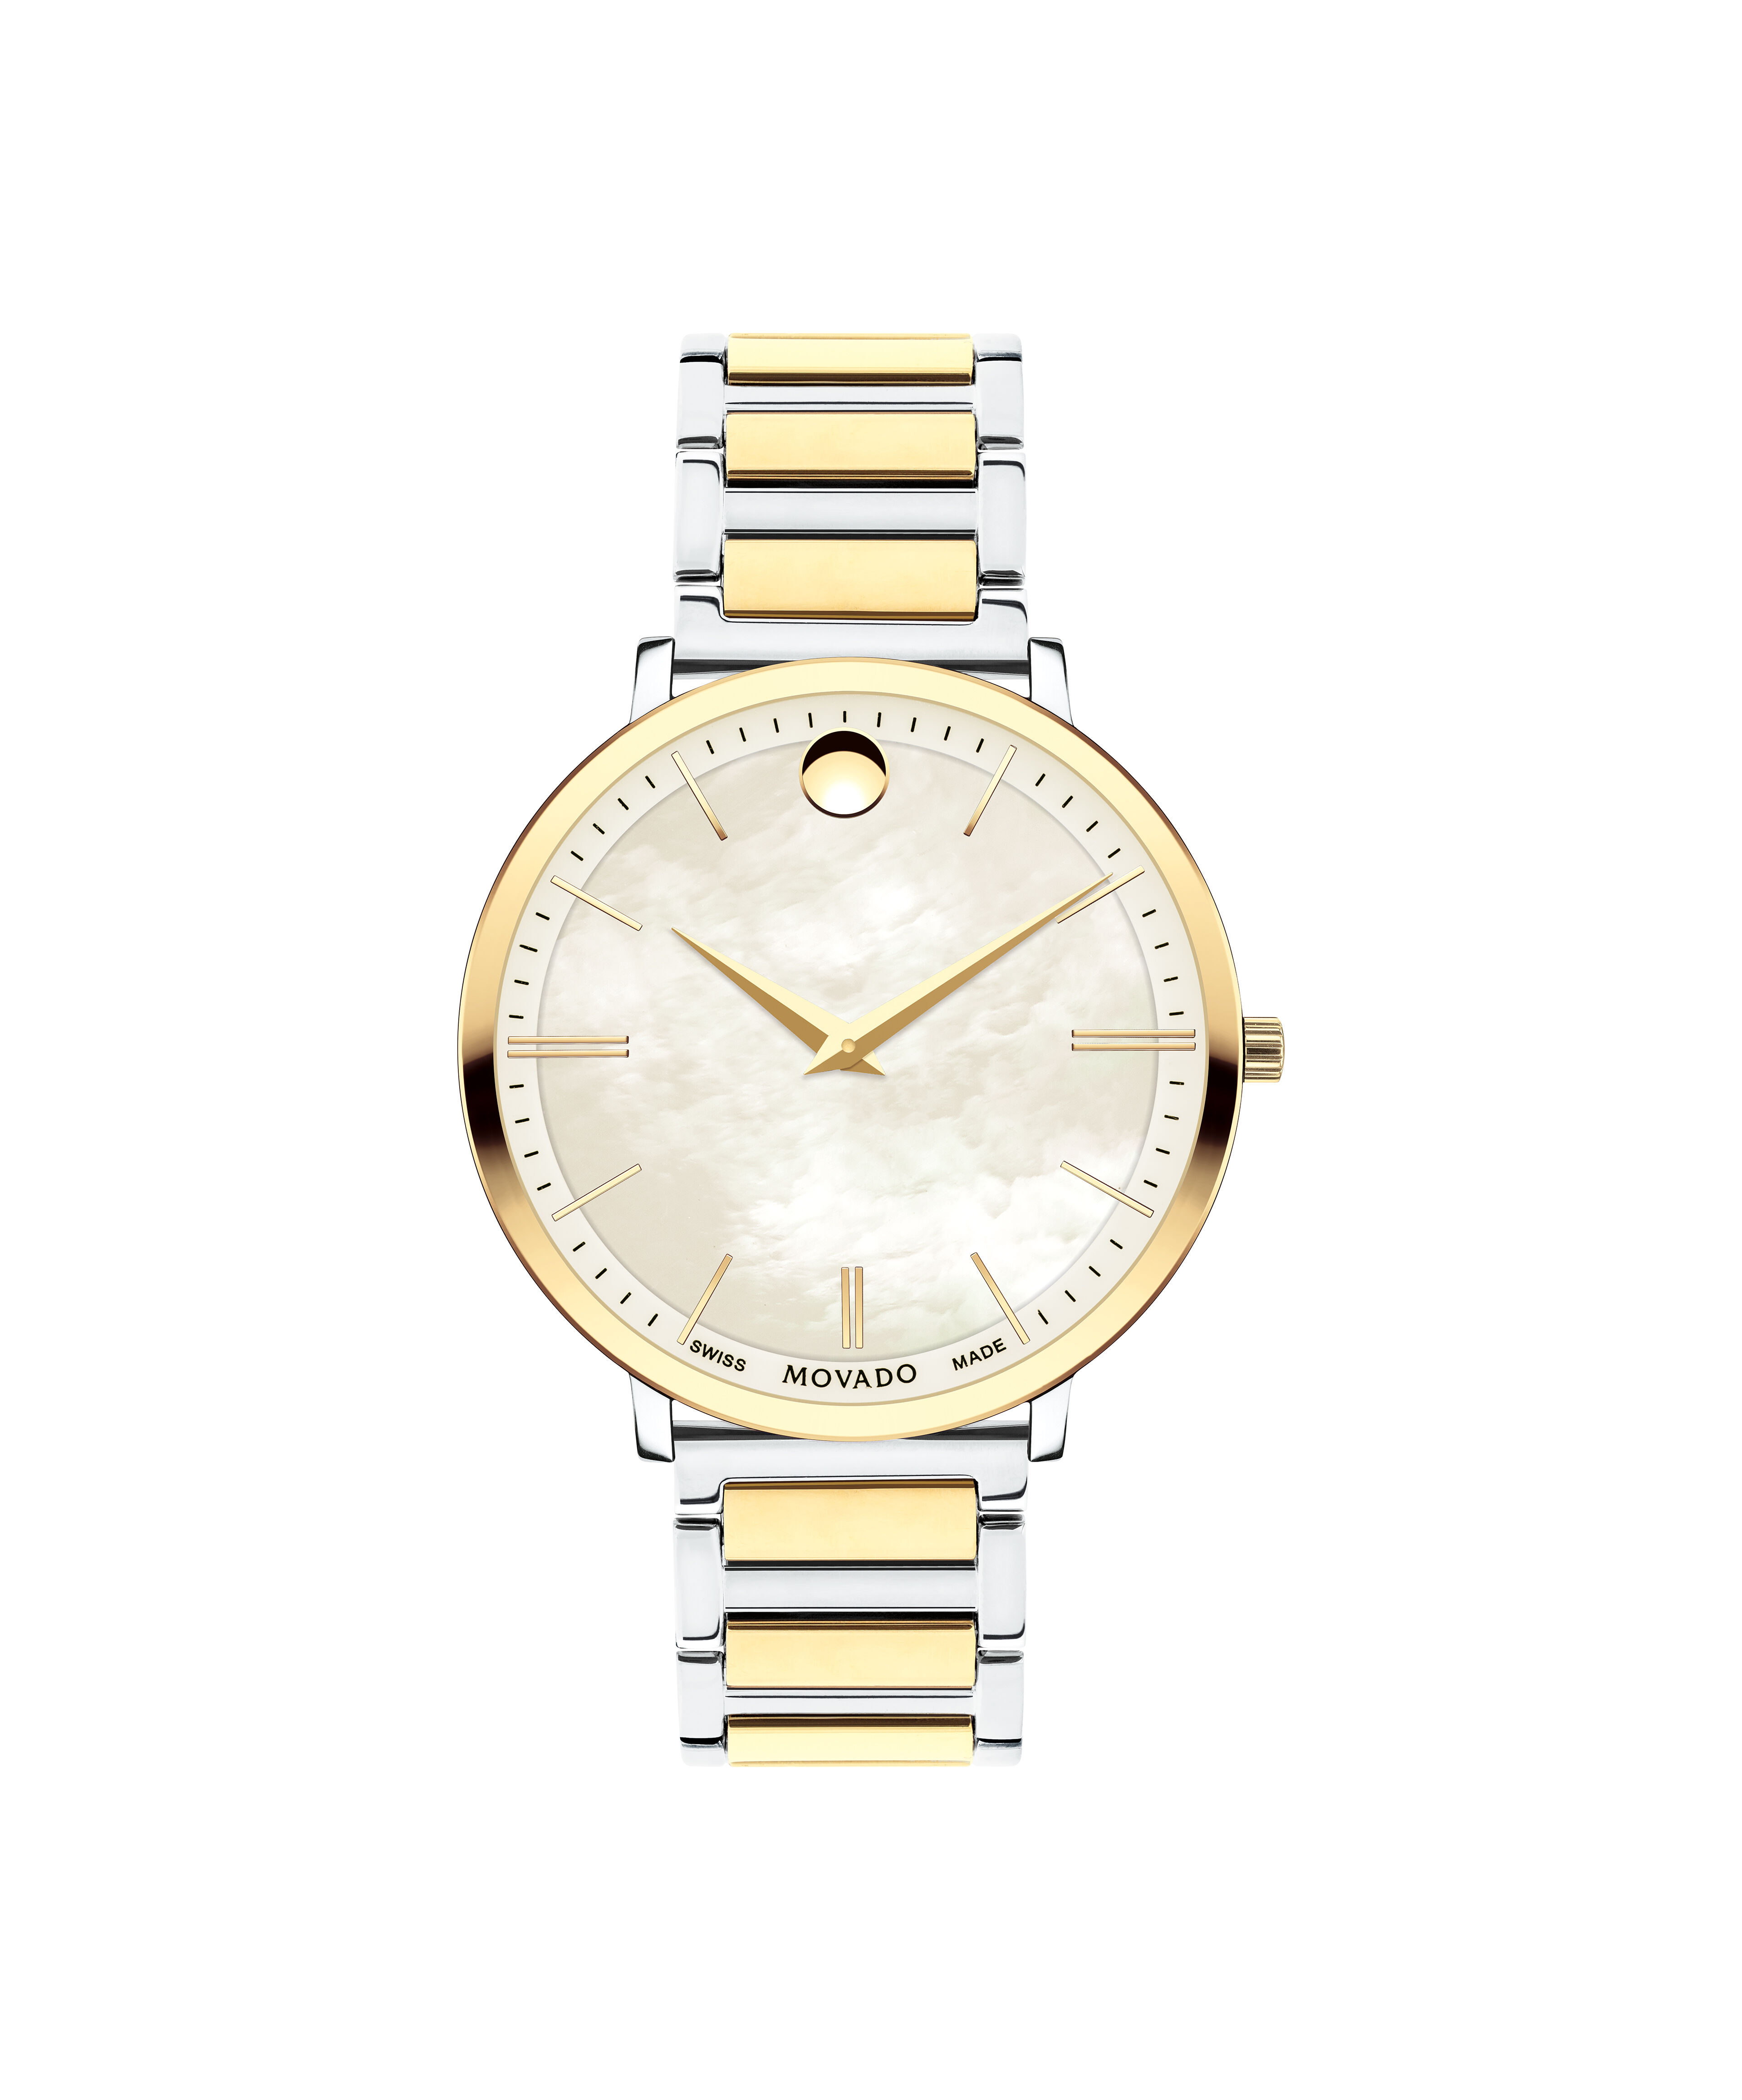 Cartier Santos Fake Automastic Watch